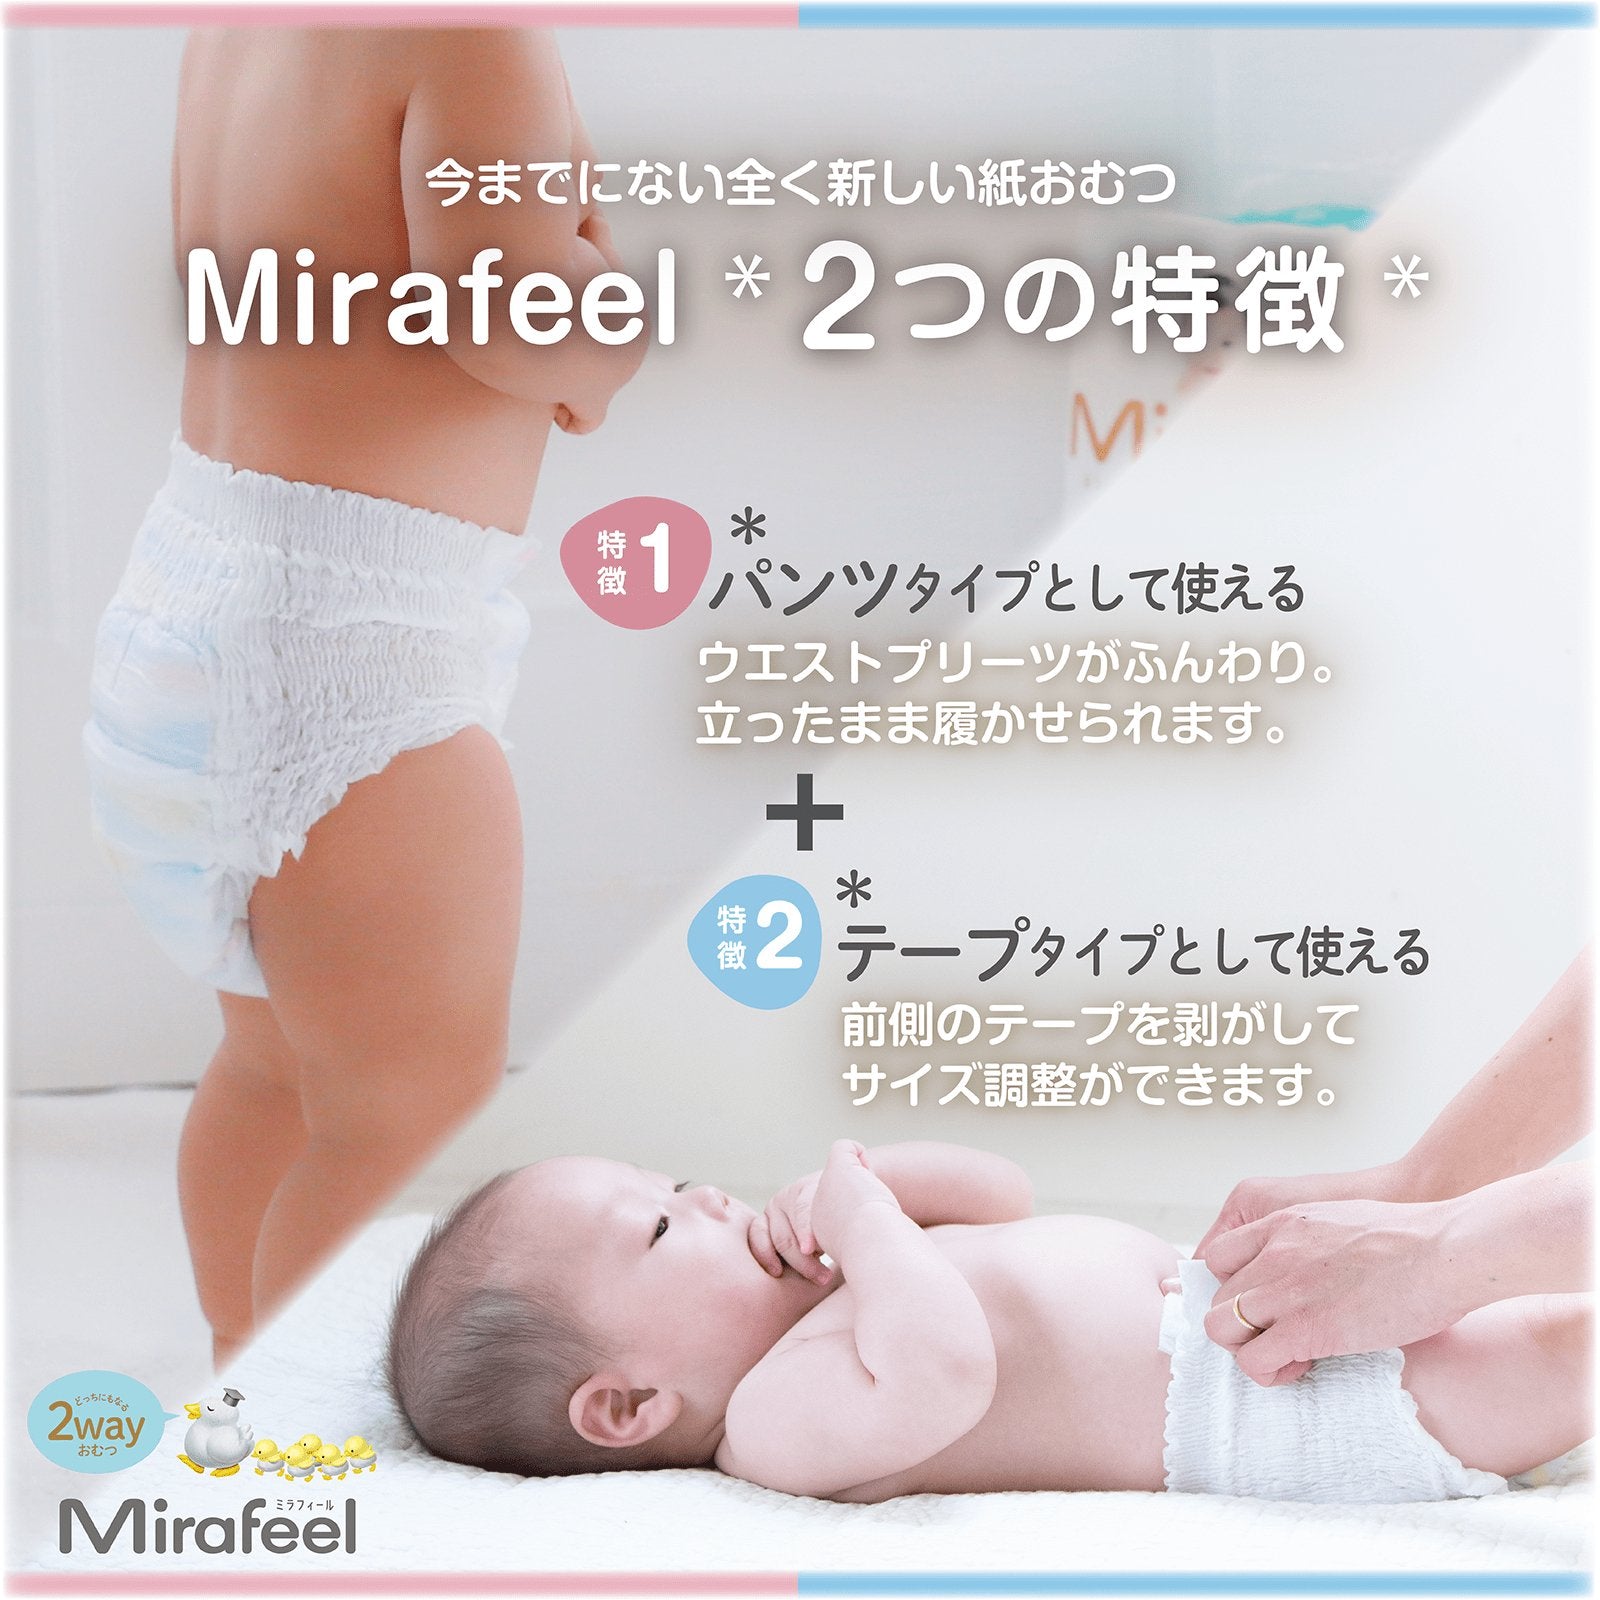 【Cセット】おむつMサイズ1箱+おしりふき5パック - Mirafeel